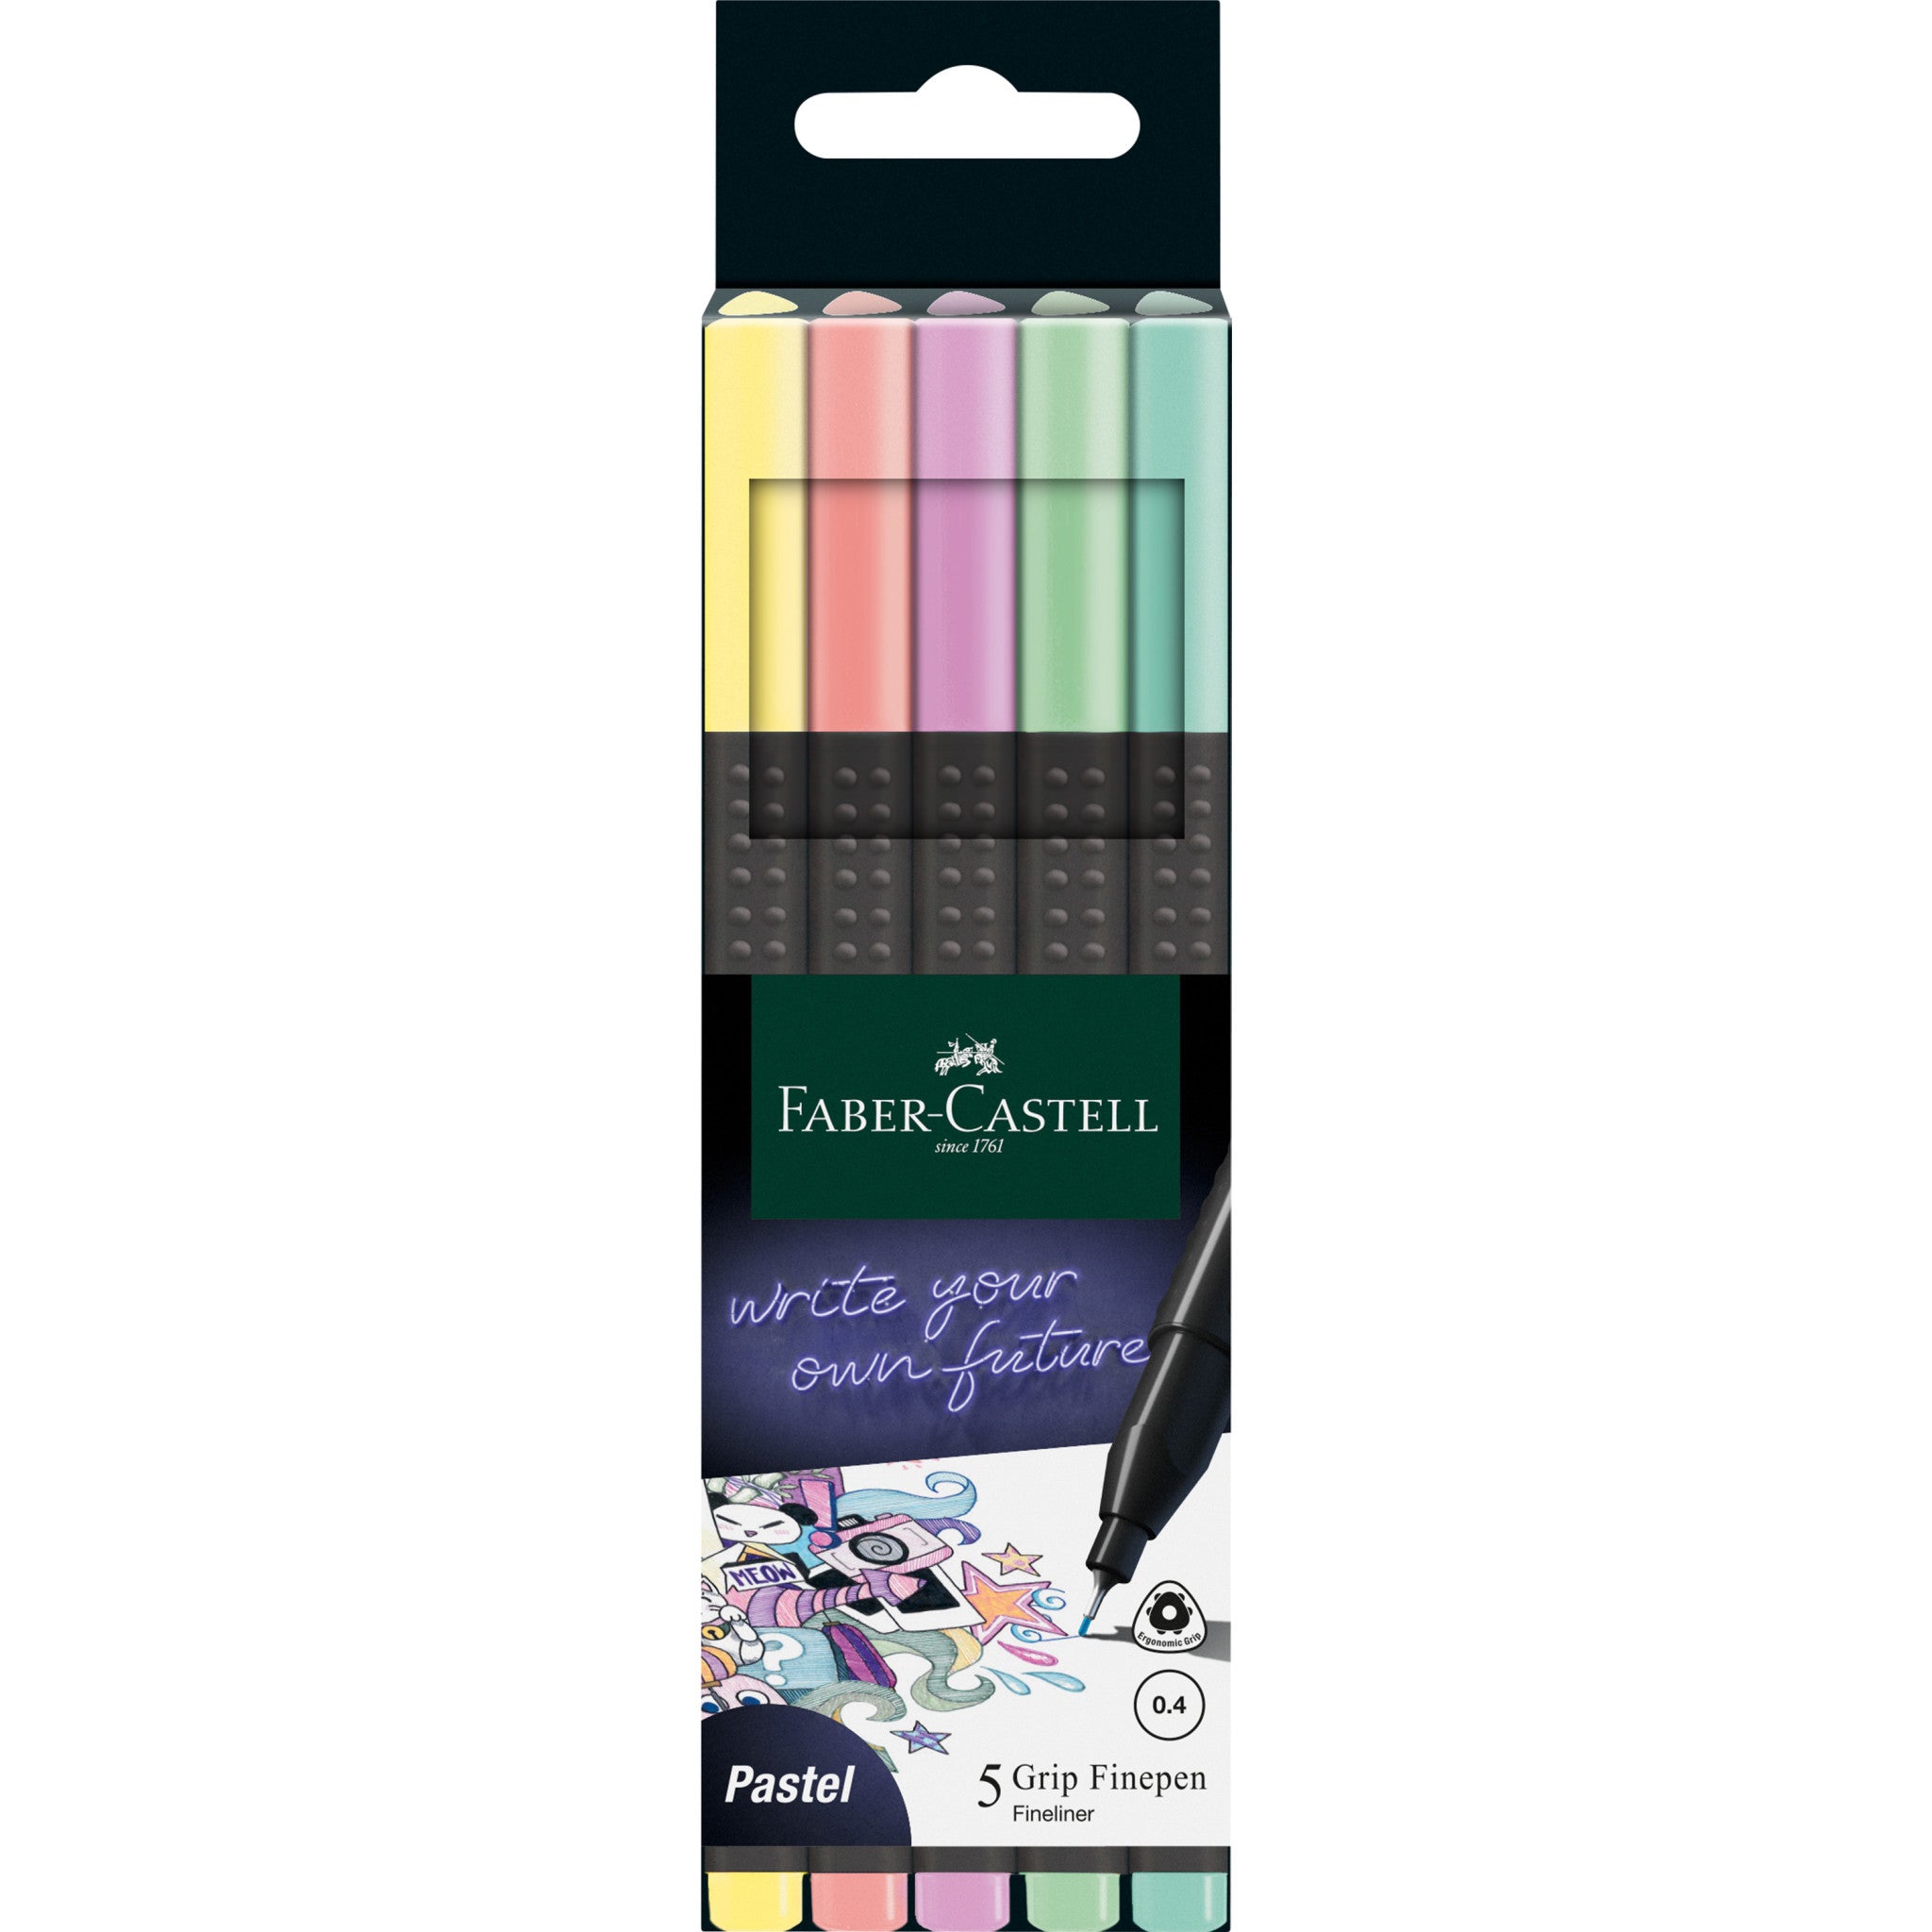 Crayon De Bois - Gris - HB - Boite De 2 - Faber Castell - Neuf/New